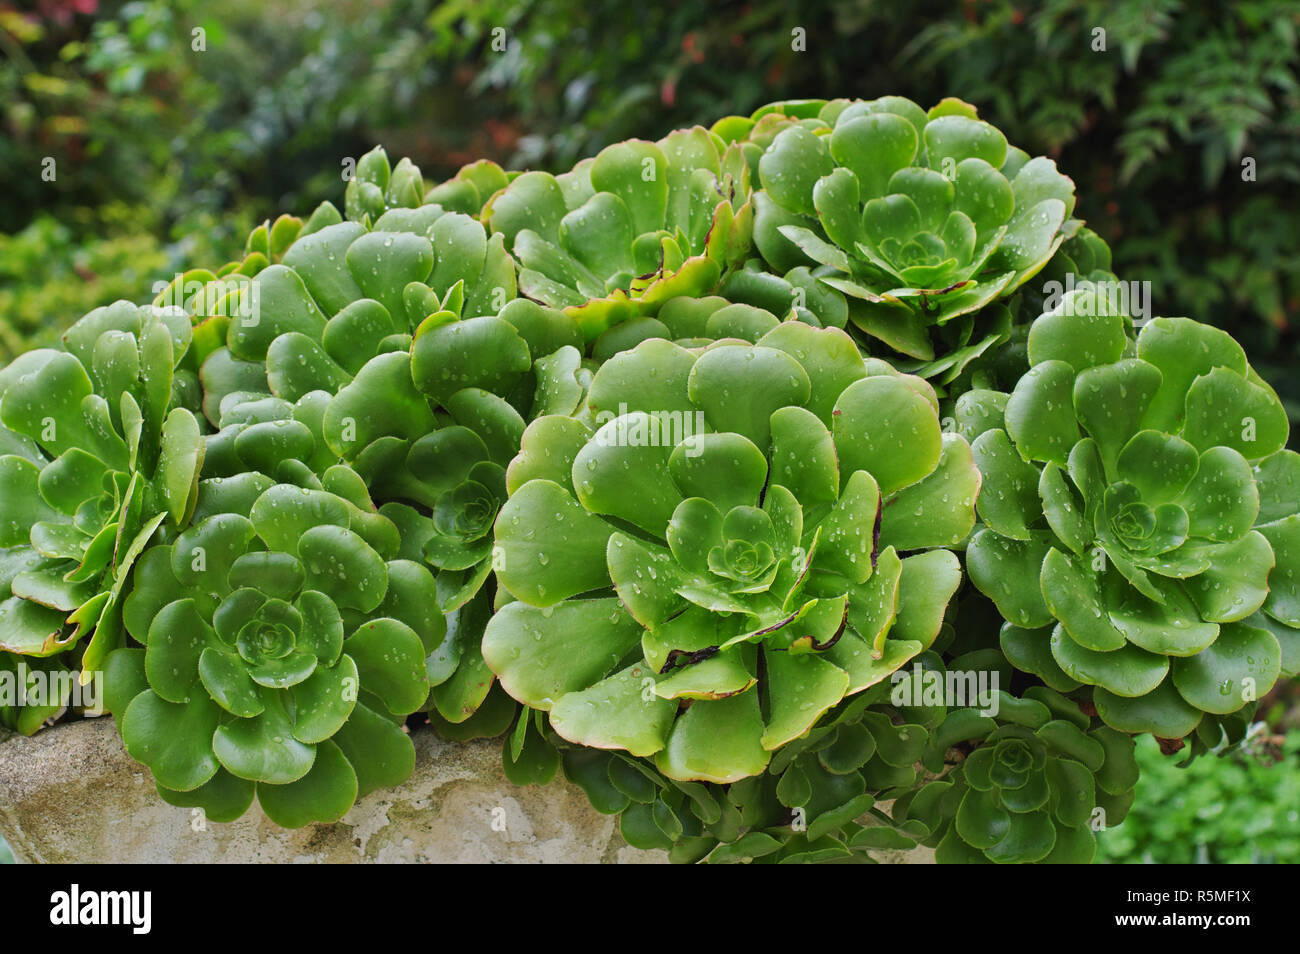 Le piante succulente in un giardino (Piante succulente | Dicotiledoni, forse Echeveria sp.) Foto Stock